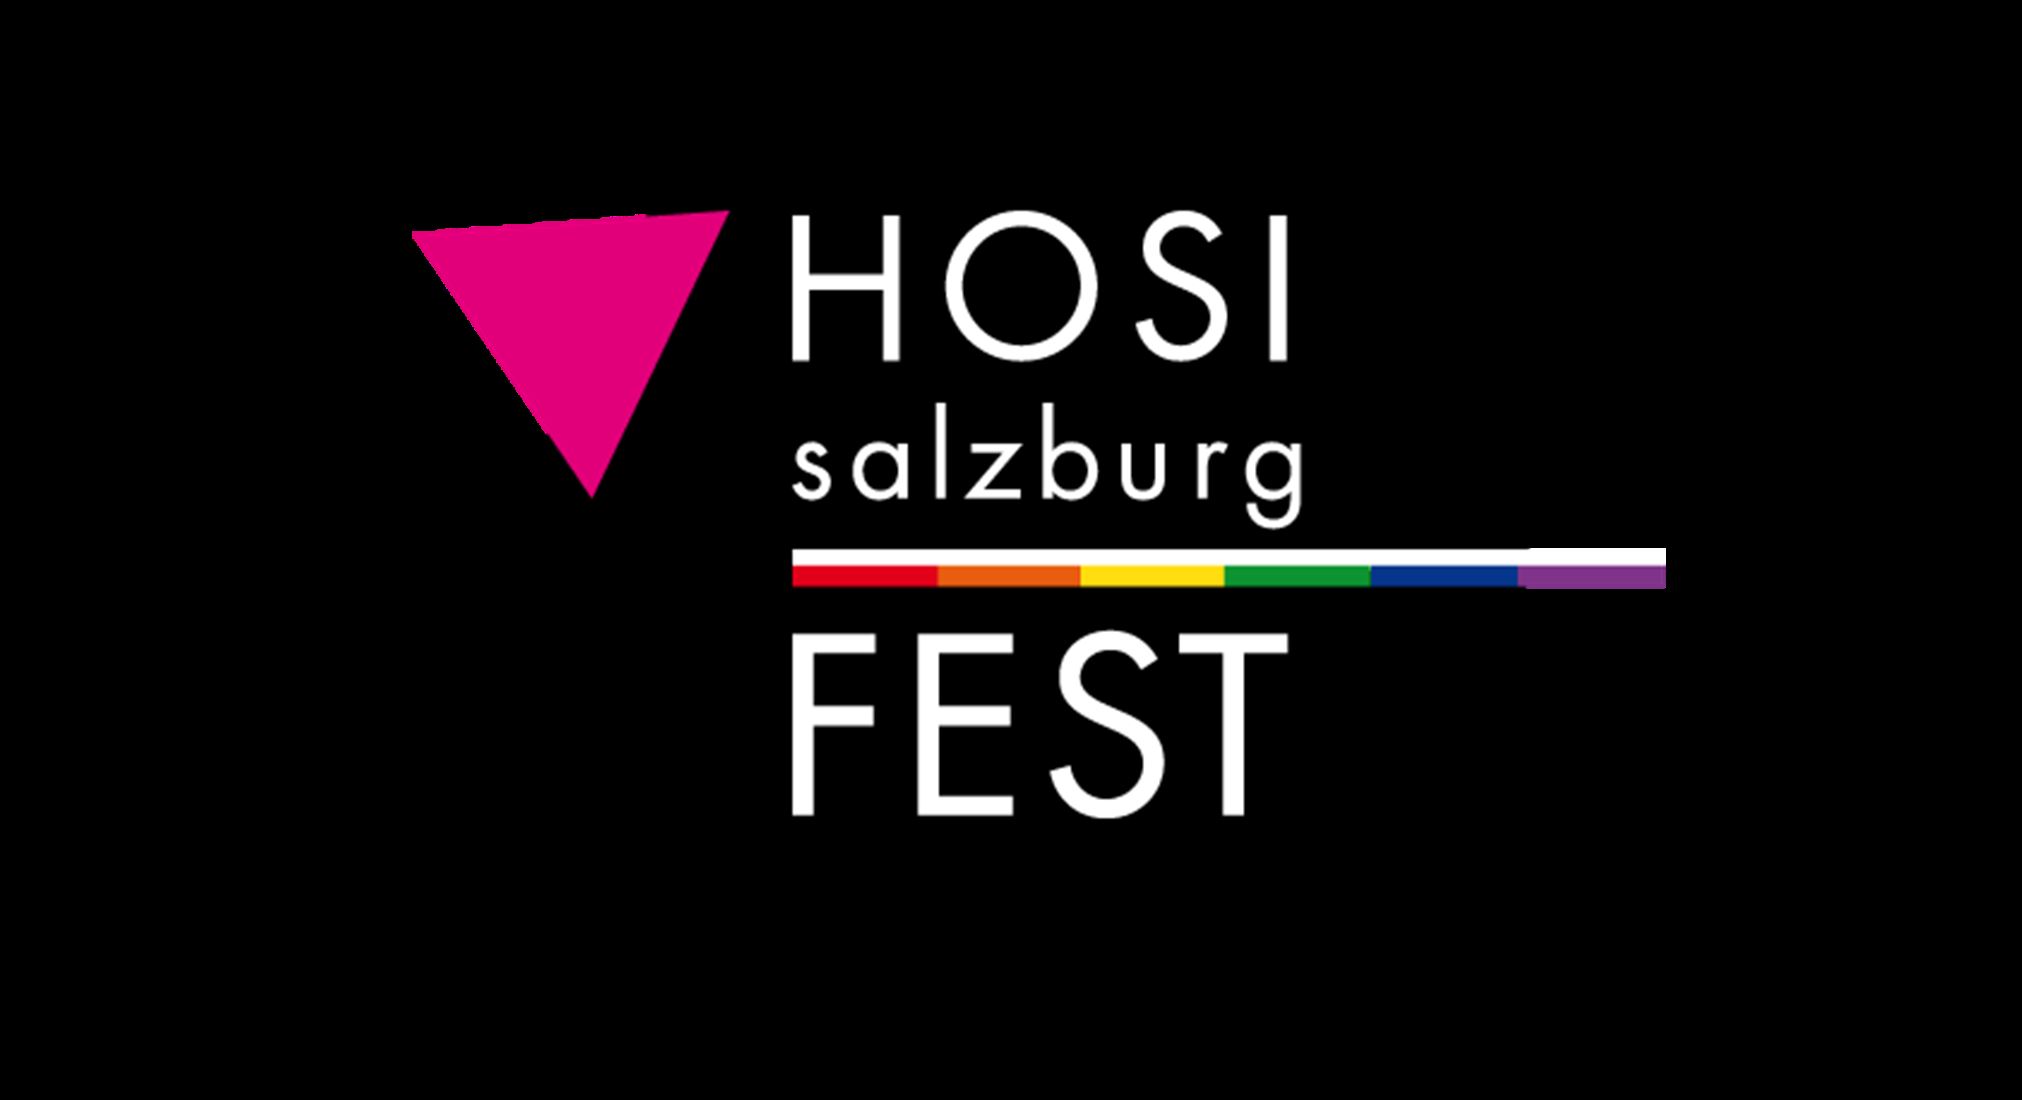 HOSI FEST - ABGESAGT! am 14.03.2020 um 21:00 Uhr